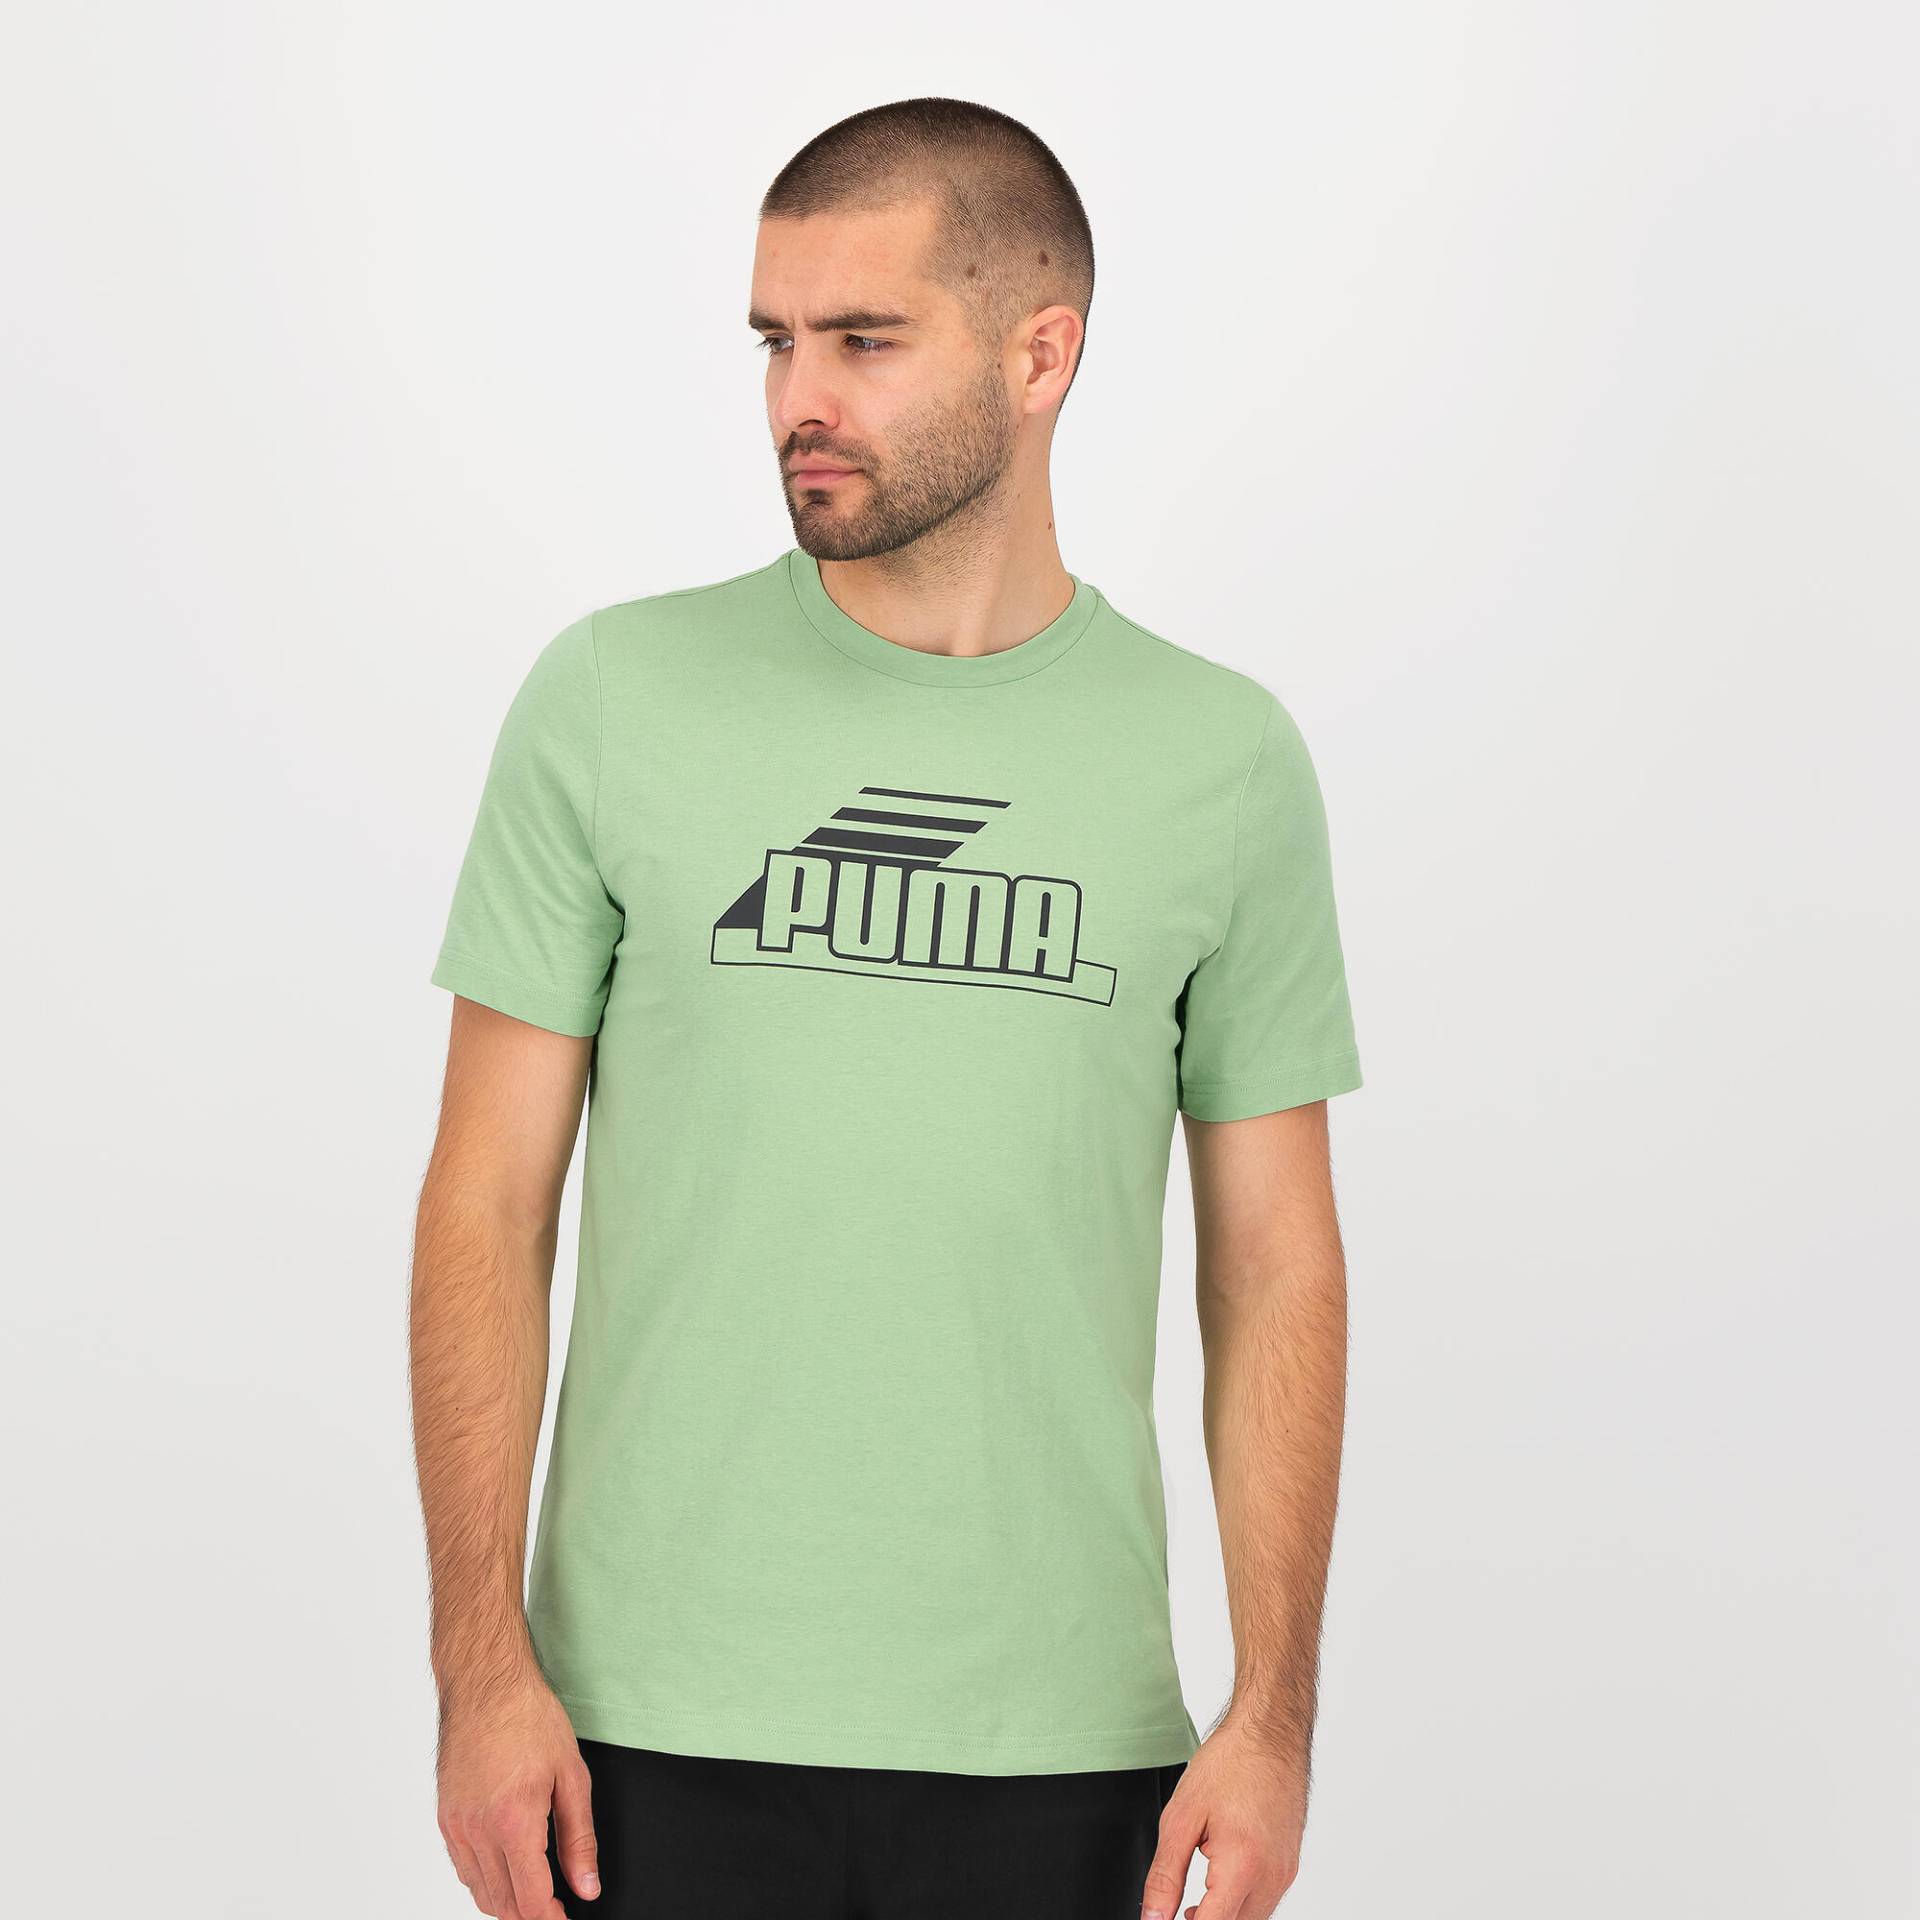 Puma T-Shirt Herren Baumwolle - grün von Puma